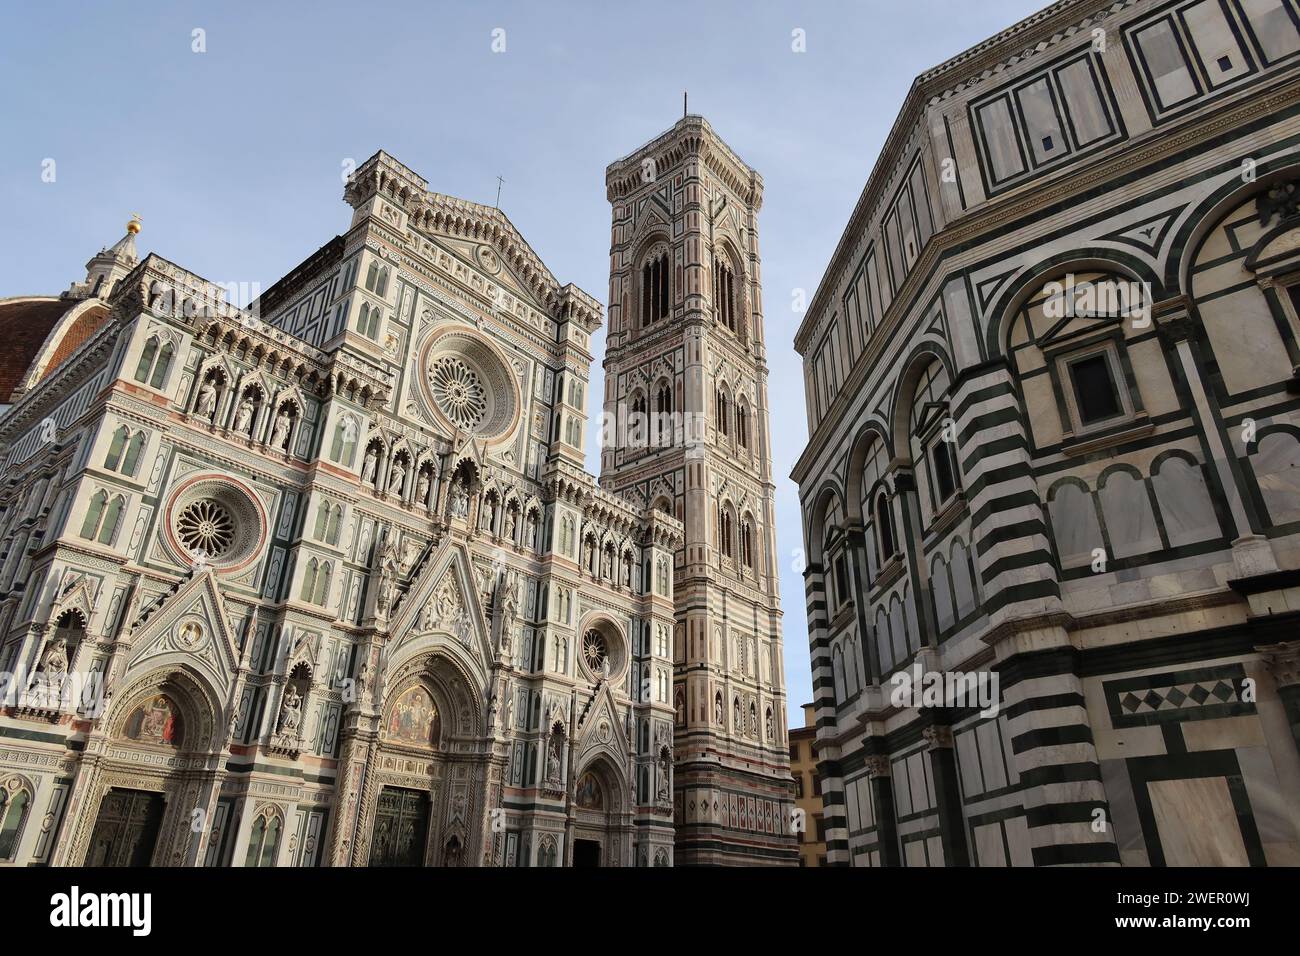 Der Duomo di Firenze steht majestätisch und einsam in diesem Bild und fängt die Pracht seines architektonischen Designs ein, ohne dass eine einzelne Person in Sicht ist. Stockfoto